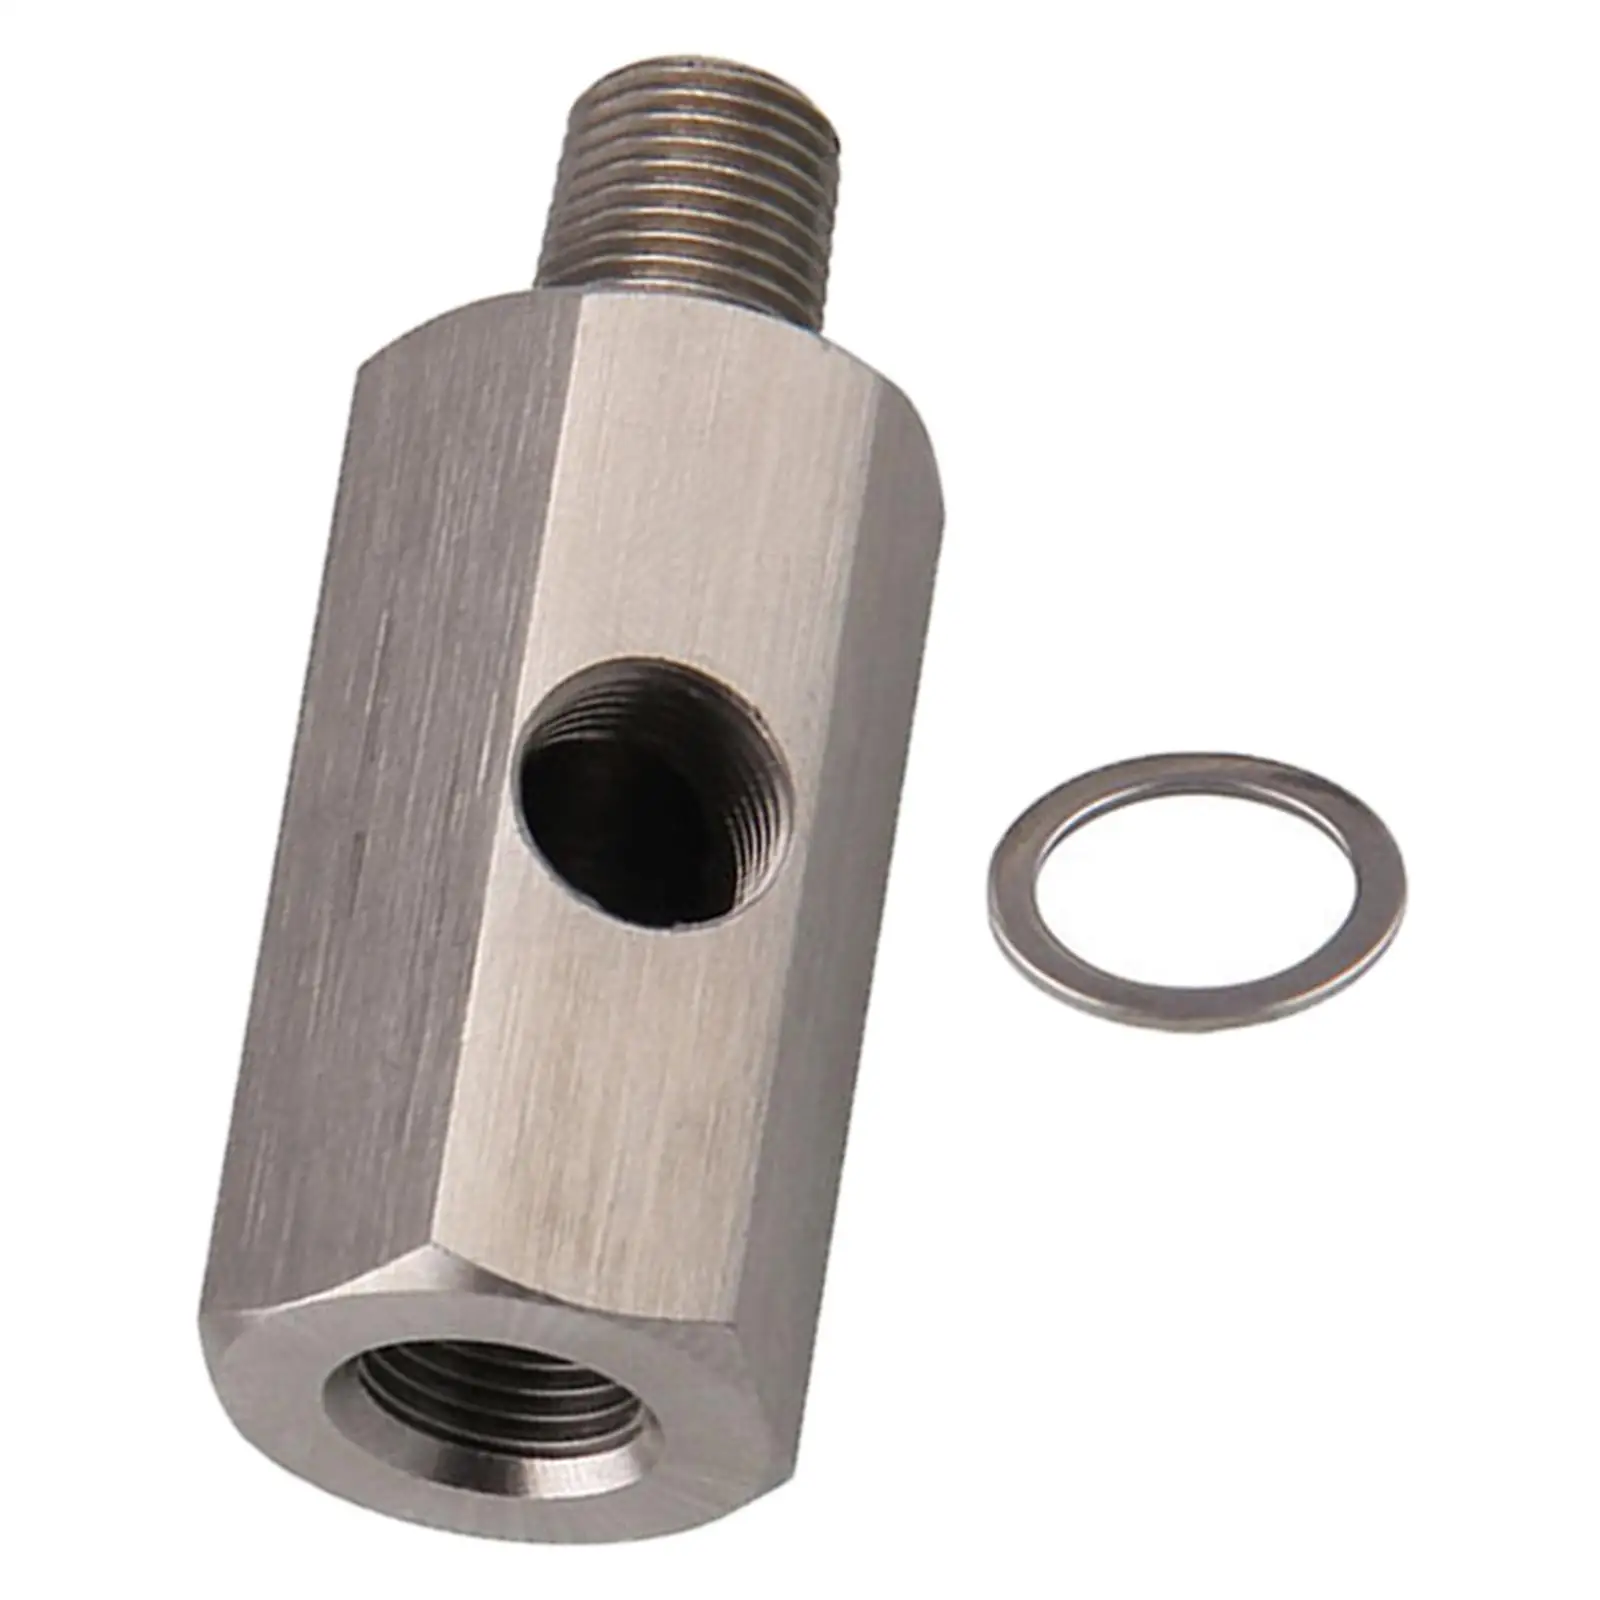 Oil Pressure Sensor /8``Npt Adapter Stainless Steel High Performance